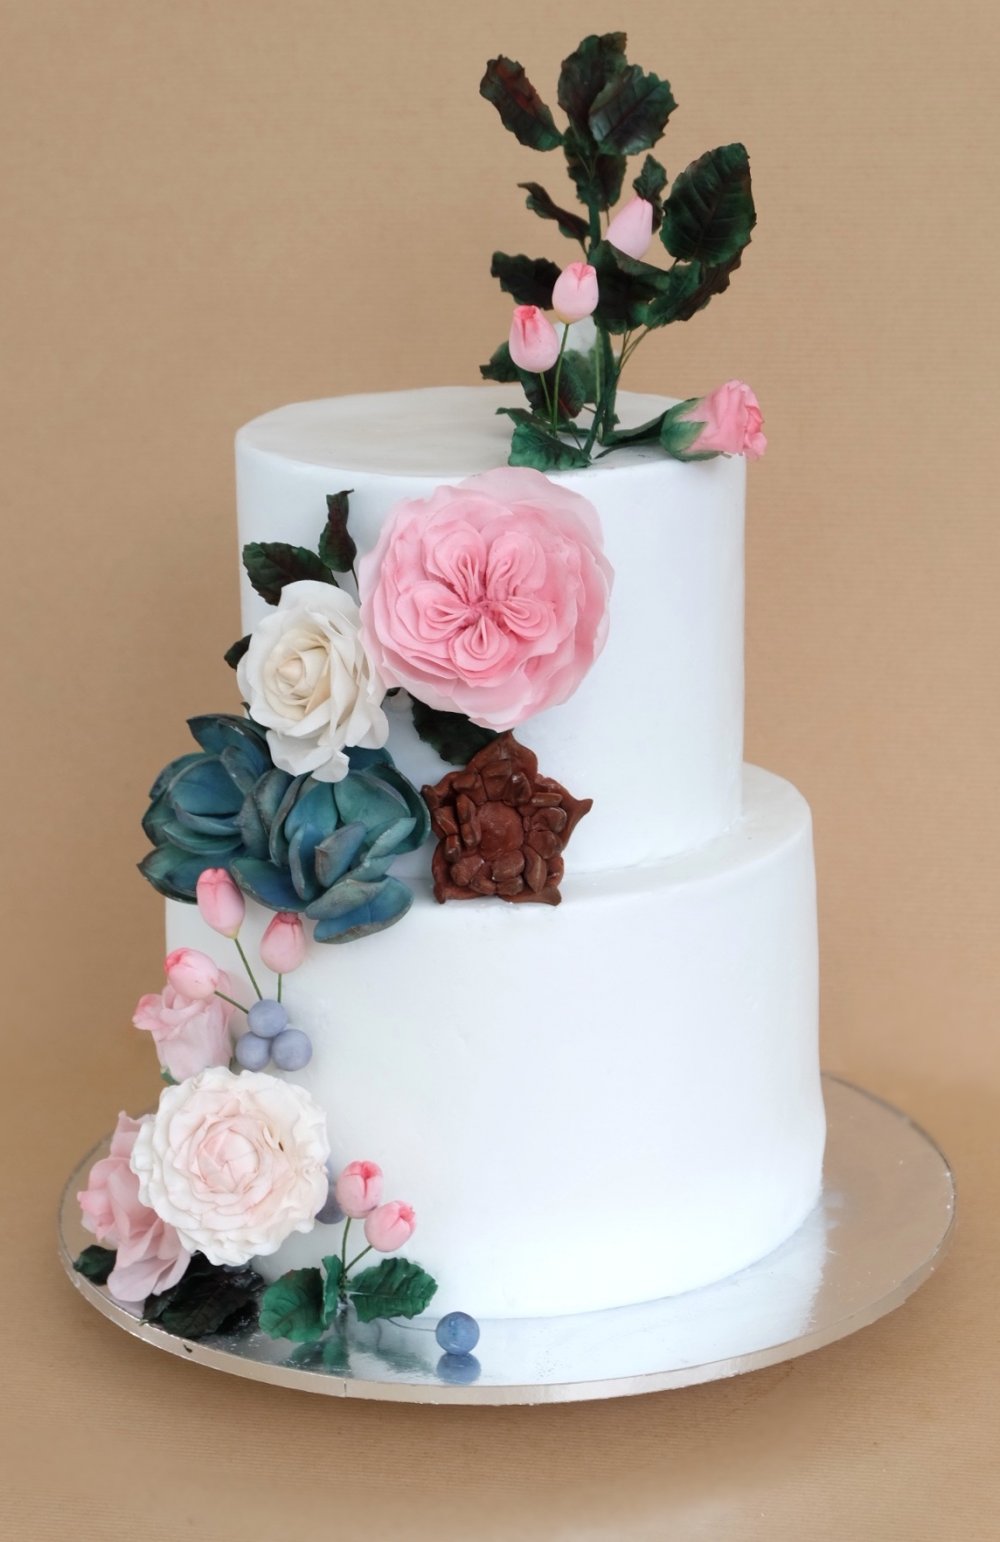 Белый двухъярусный торт с большой композицией из сахарной флористики. Бутоны роз, розы джульетты, каменные розы и ягодки.